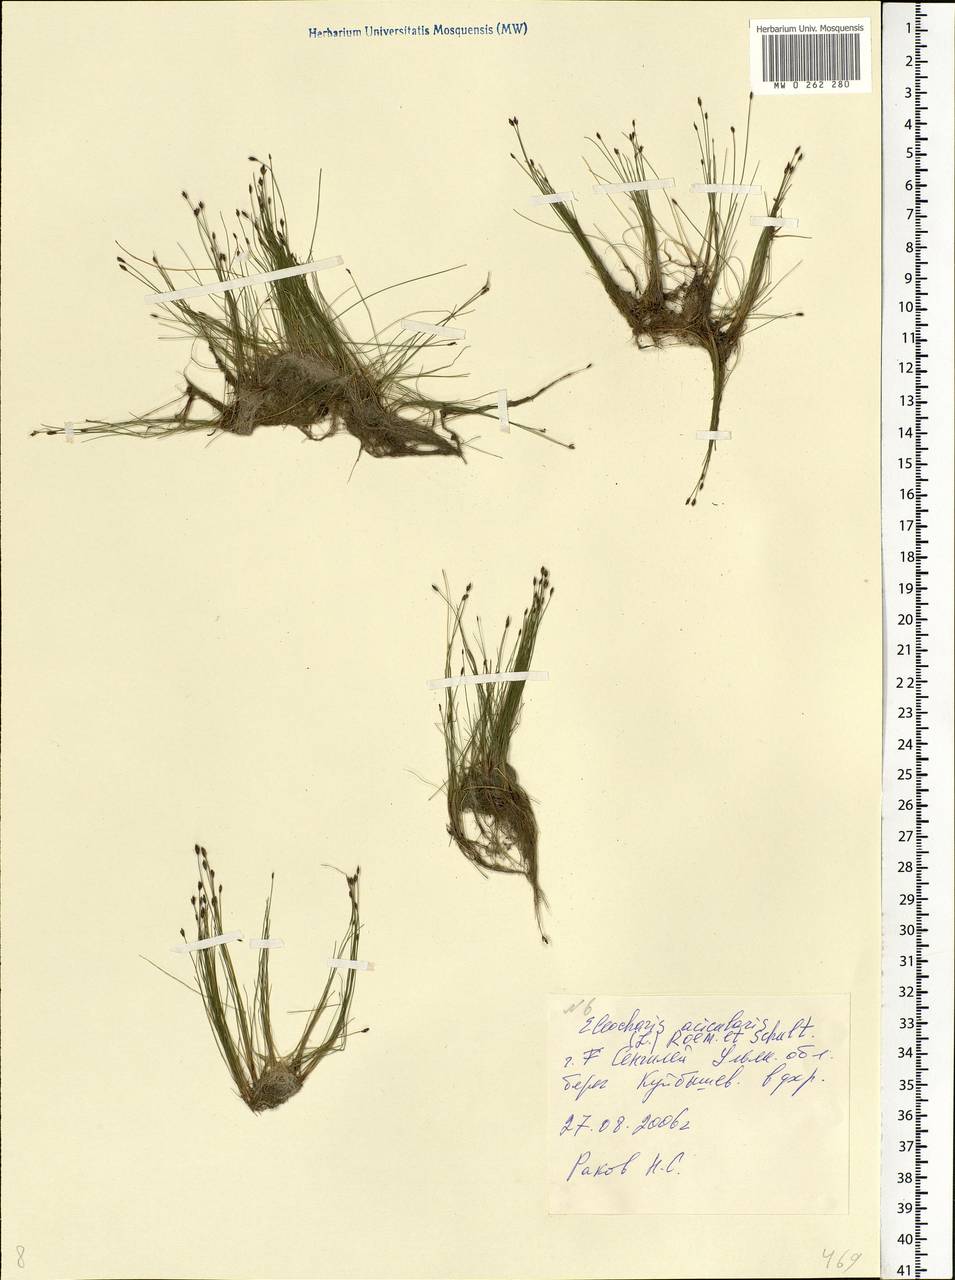 Eleocharis acicularis (L.) Roem. & Schult., Eastern Europe, Middle Volga region (E8) (Russia)